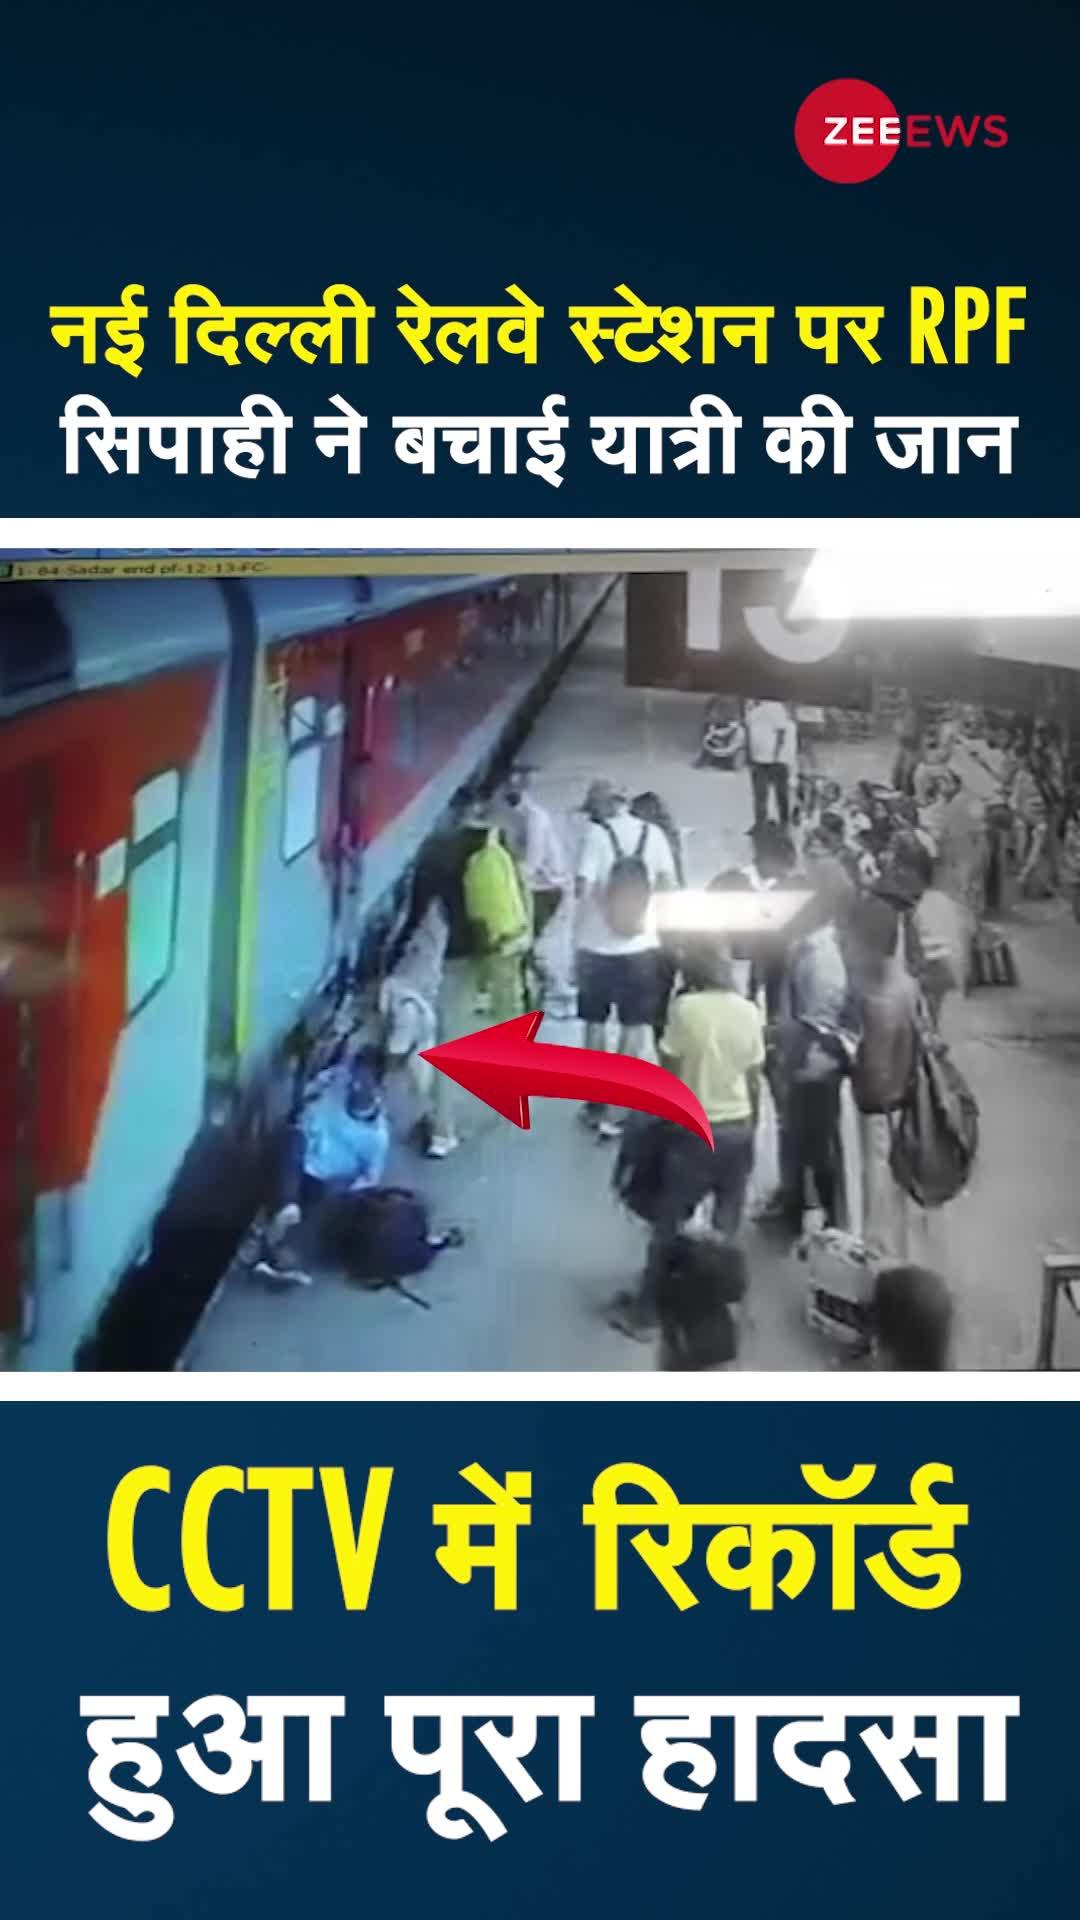 New Delhi: RPF सिपाही ने बचाई यात्री की जान, CCTV में रिकॉर्ड हुआ पूरा हादसा